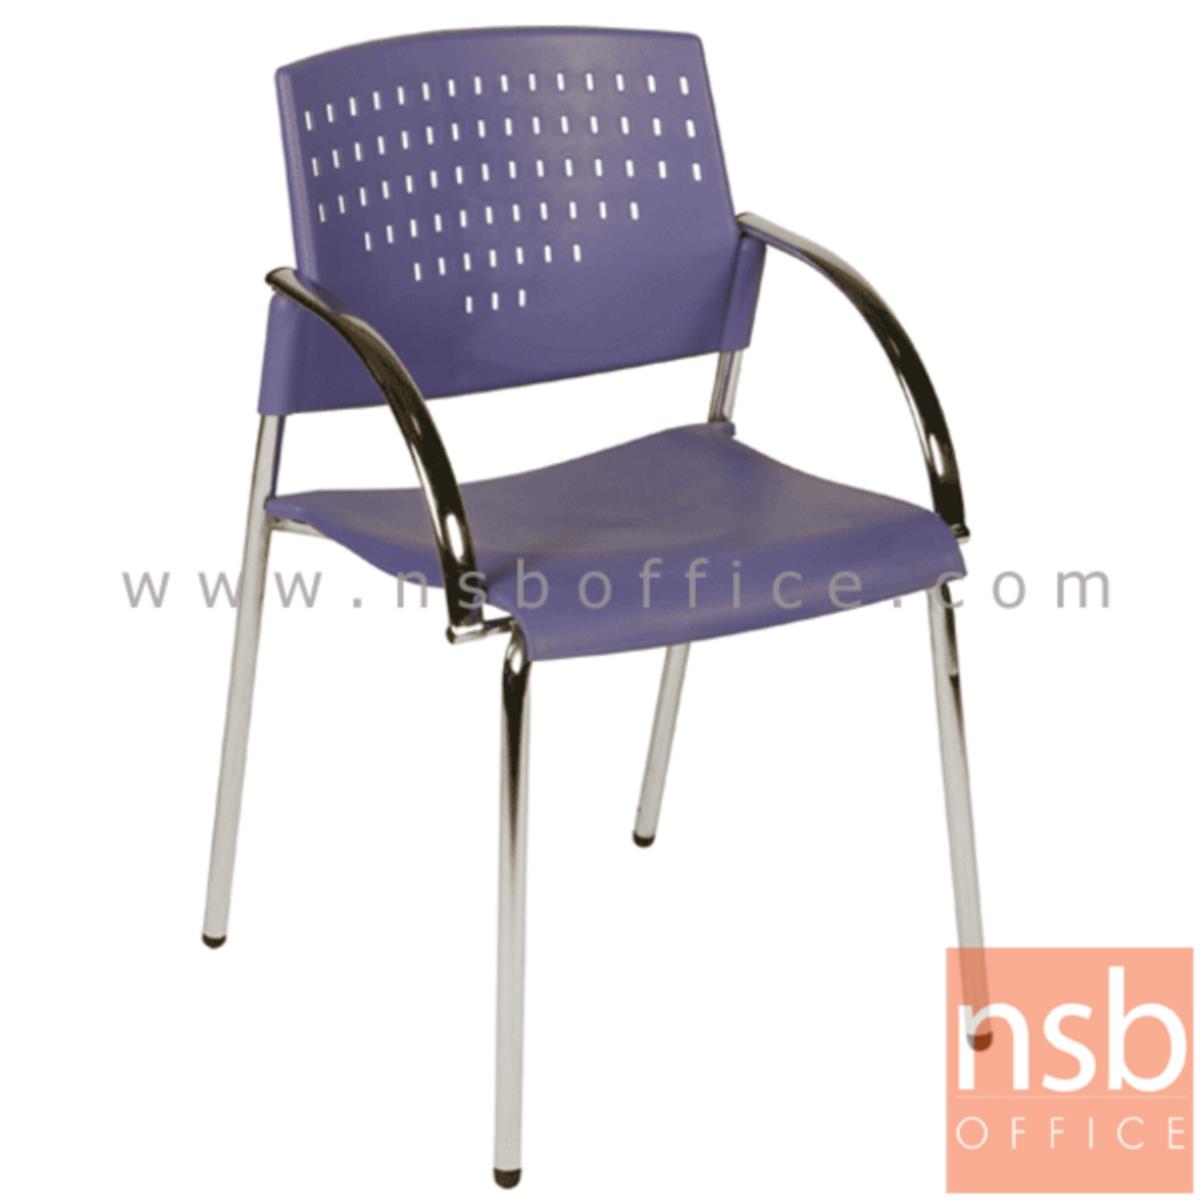 B05A040:เก้าอี้อเนกประสงค์เฟรมโพลี่  รุ่น A4-51  ขาเหล็กชุบโครเมี่ยม